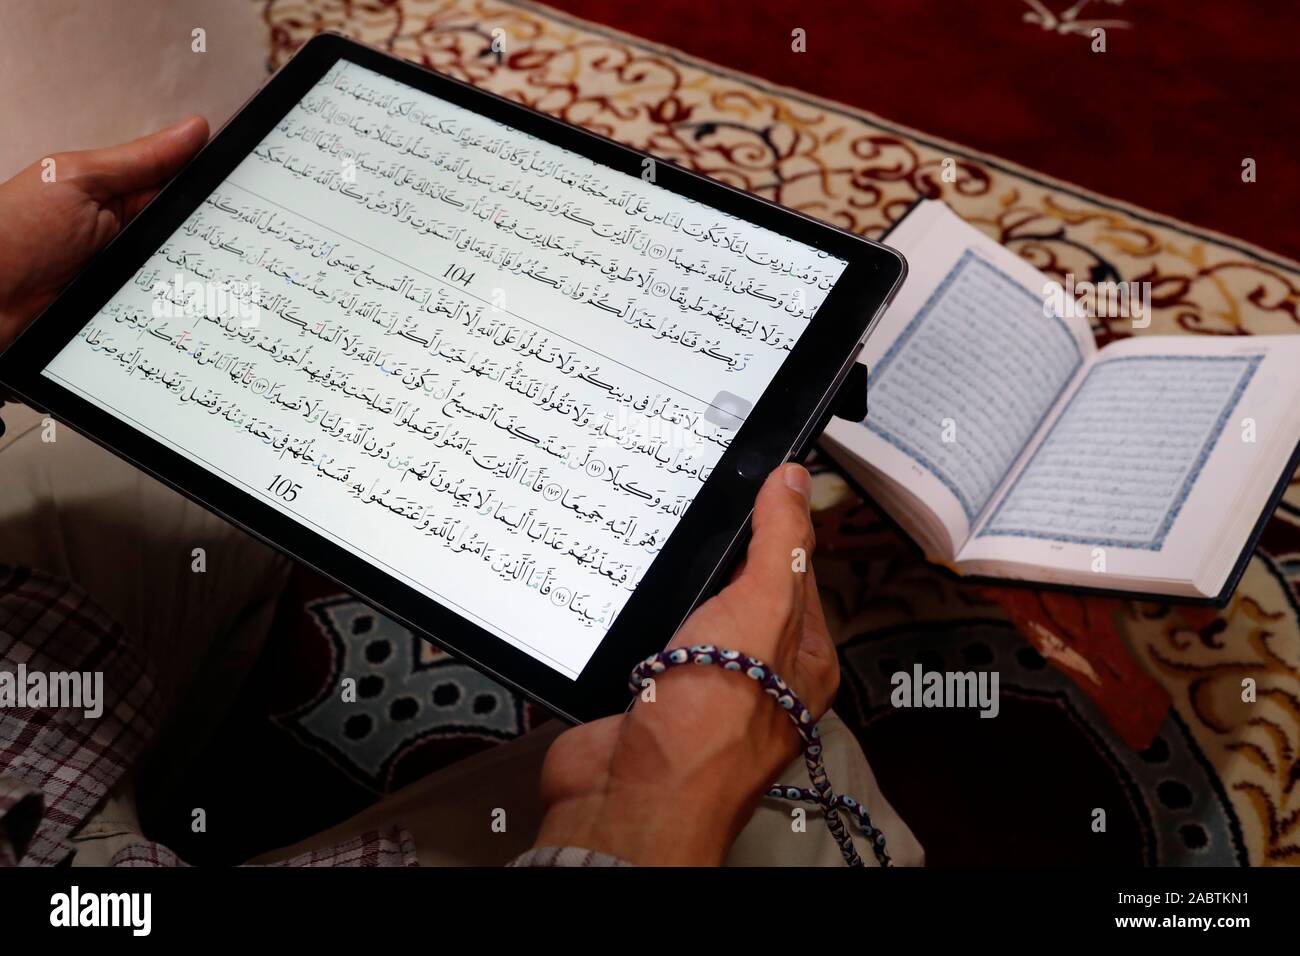 Une lecture musulmane Coran numérique sur une tablette.en arrière-plan un document papier traditionnel arabe Saint Coran. Banque D'Images